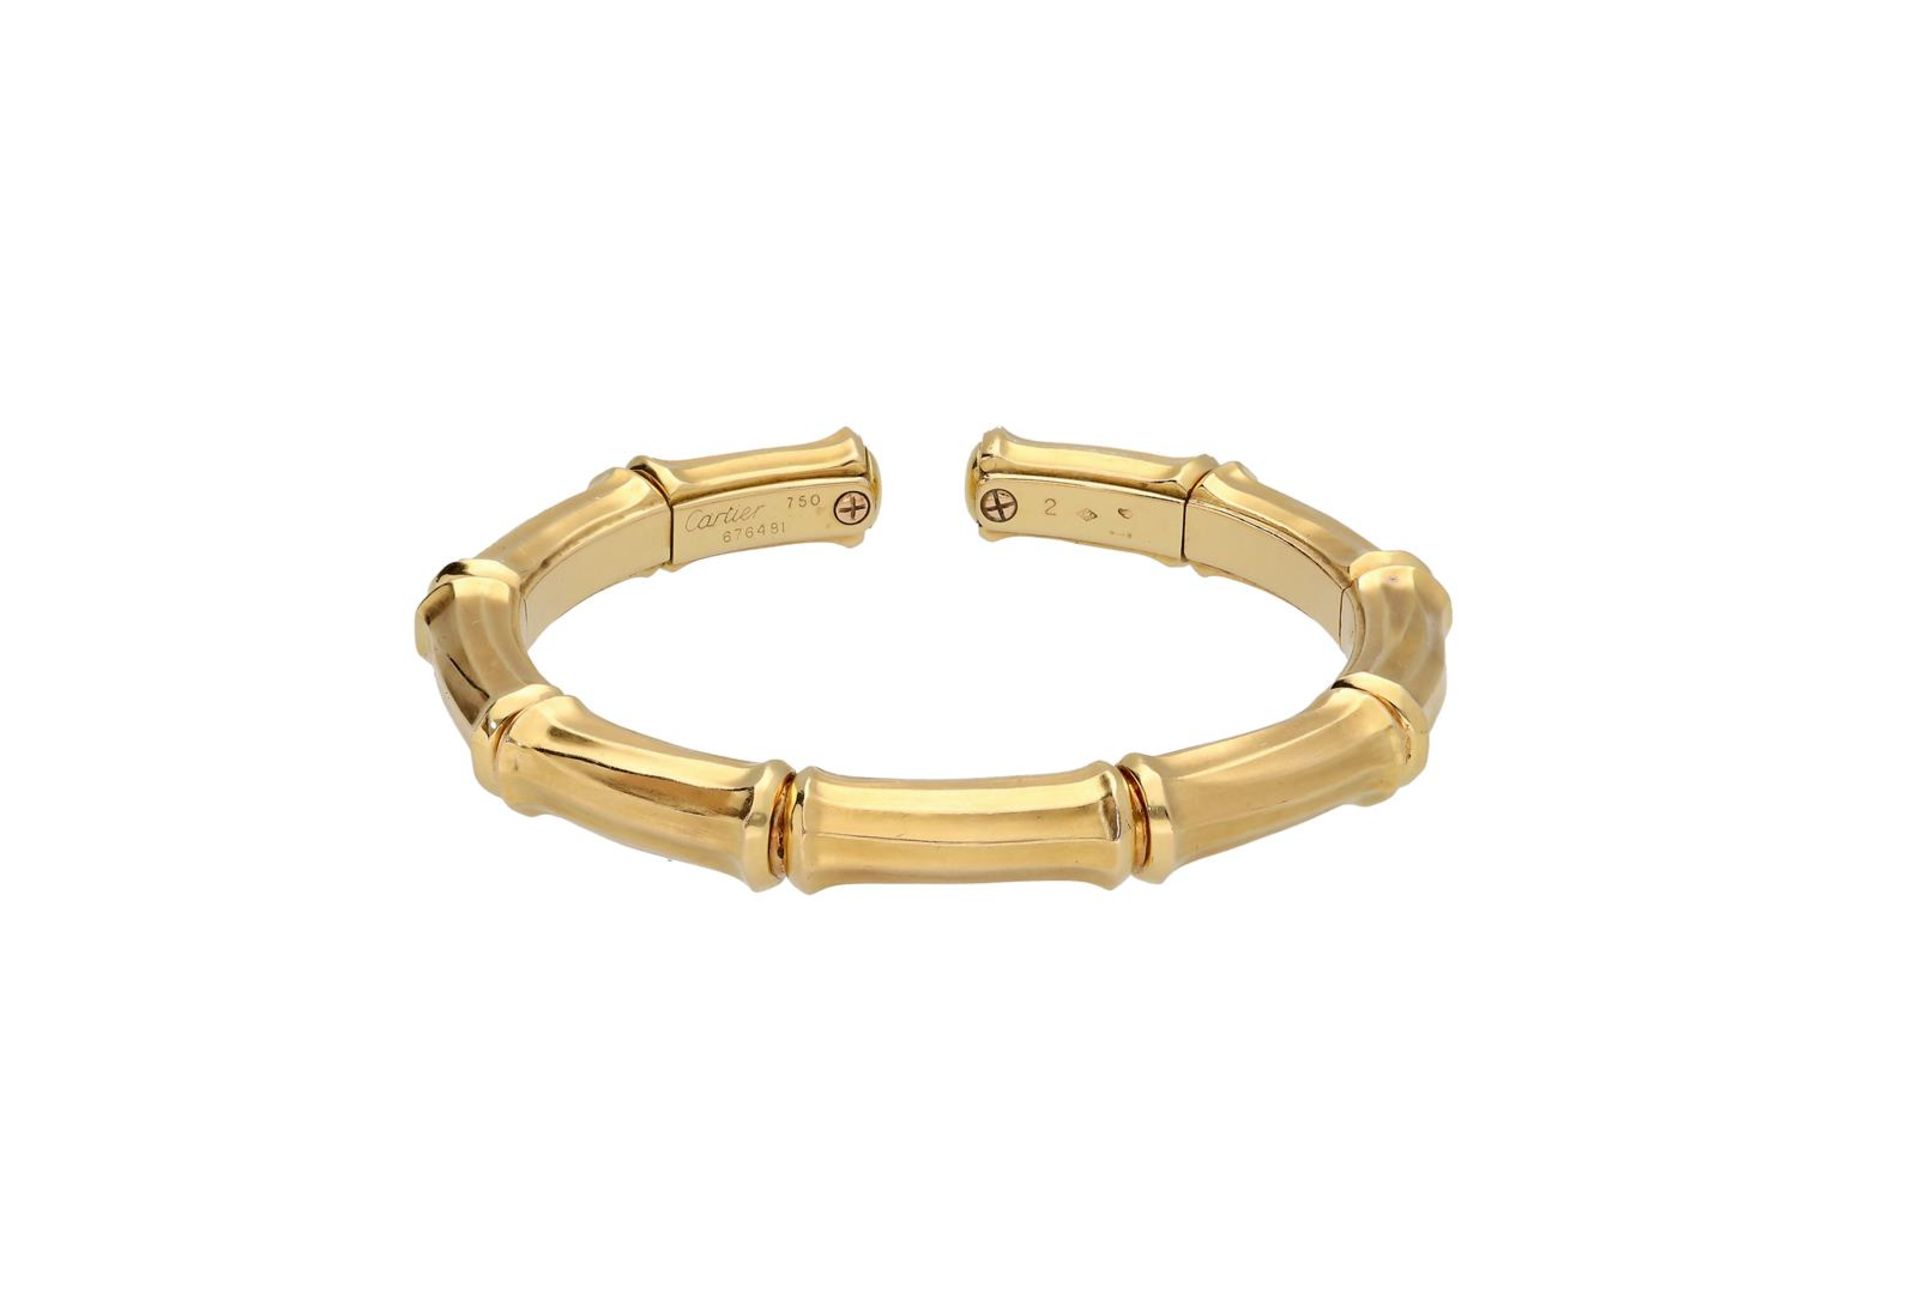 Cartier, an 18-kt gold cuff bracelet, 'Bamboo', No. 676481.
H x W: 6.5 x 7.5 cm. Total weight: 53.6  - Bild 2 aus 3